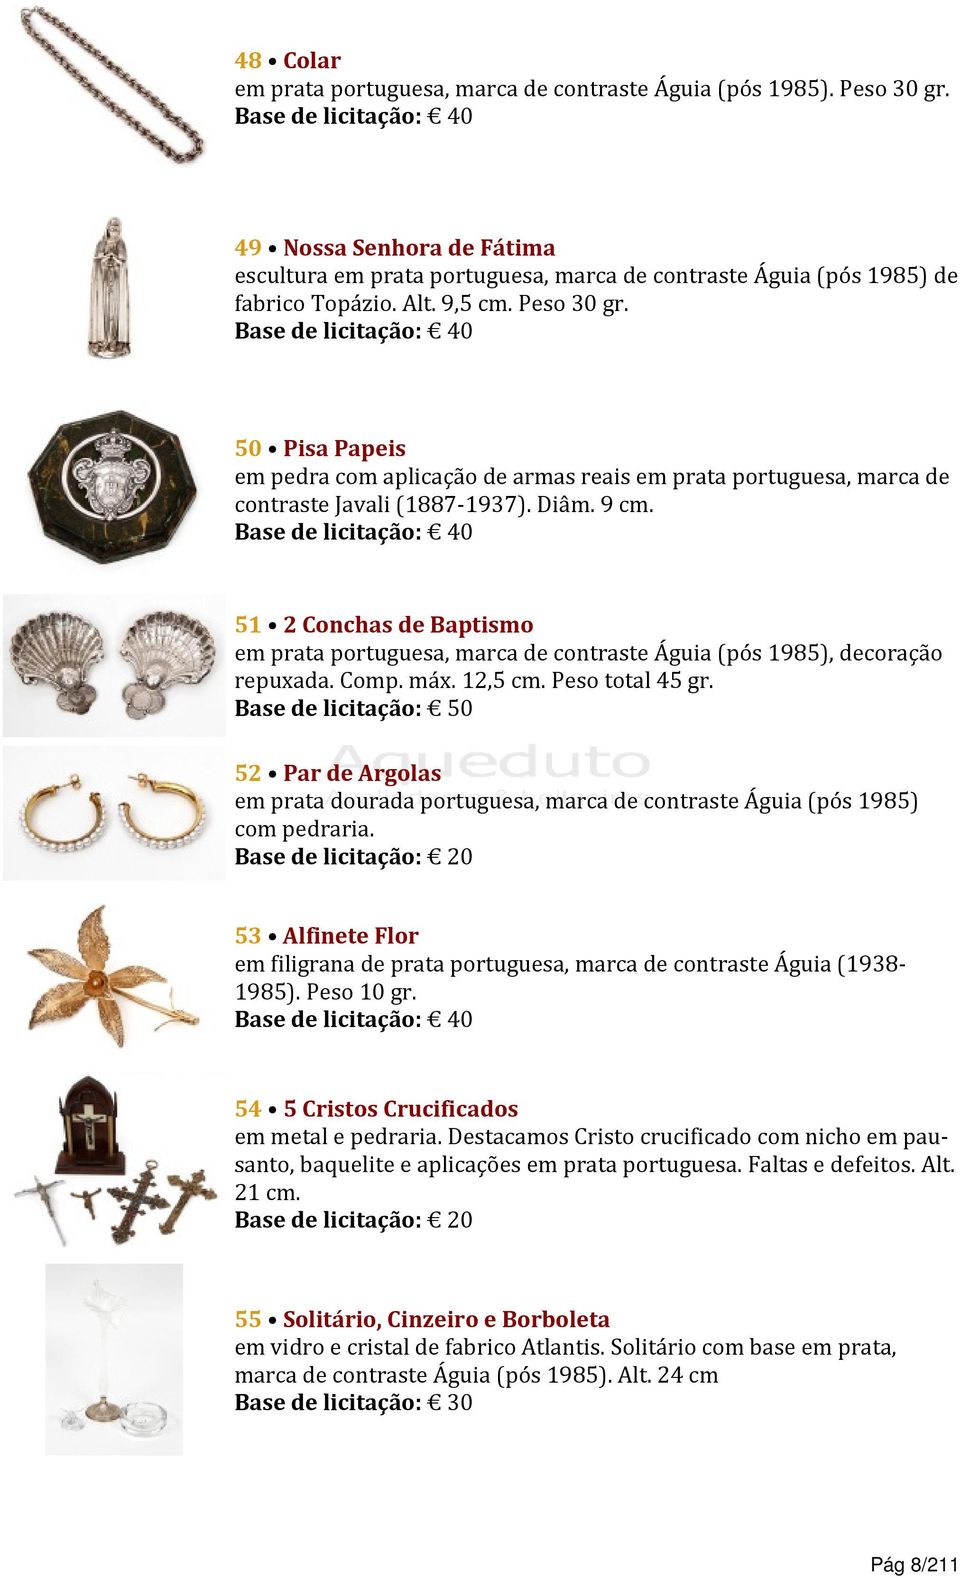 51 2 Conchas de Baptismo em prata portuguesa, marca de contraste Águia (pós 1985), decoração repuxada. Comp. máx. 12,5 cm. Peso total 45 gr.